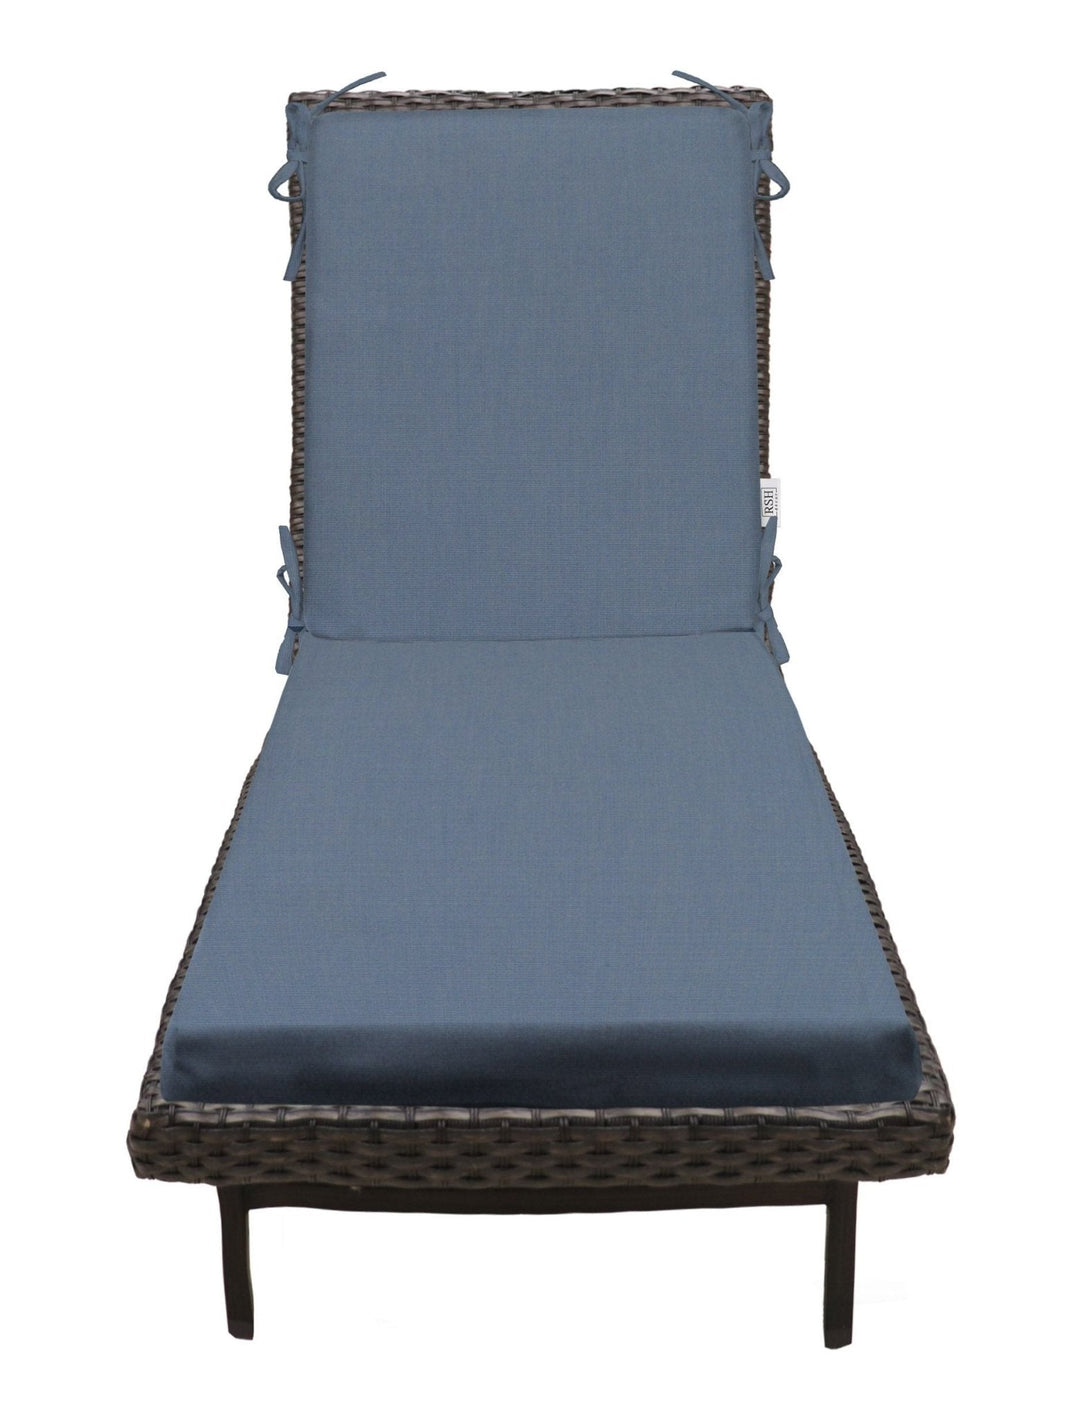 Chaise Lounge Chair Cushion, Foam, 72" H x 22" W", Sunbrella Solids - RSH Decor